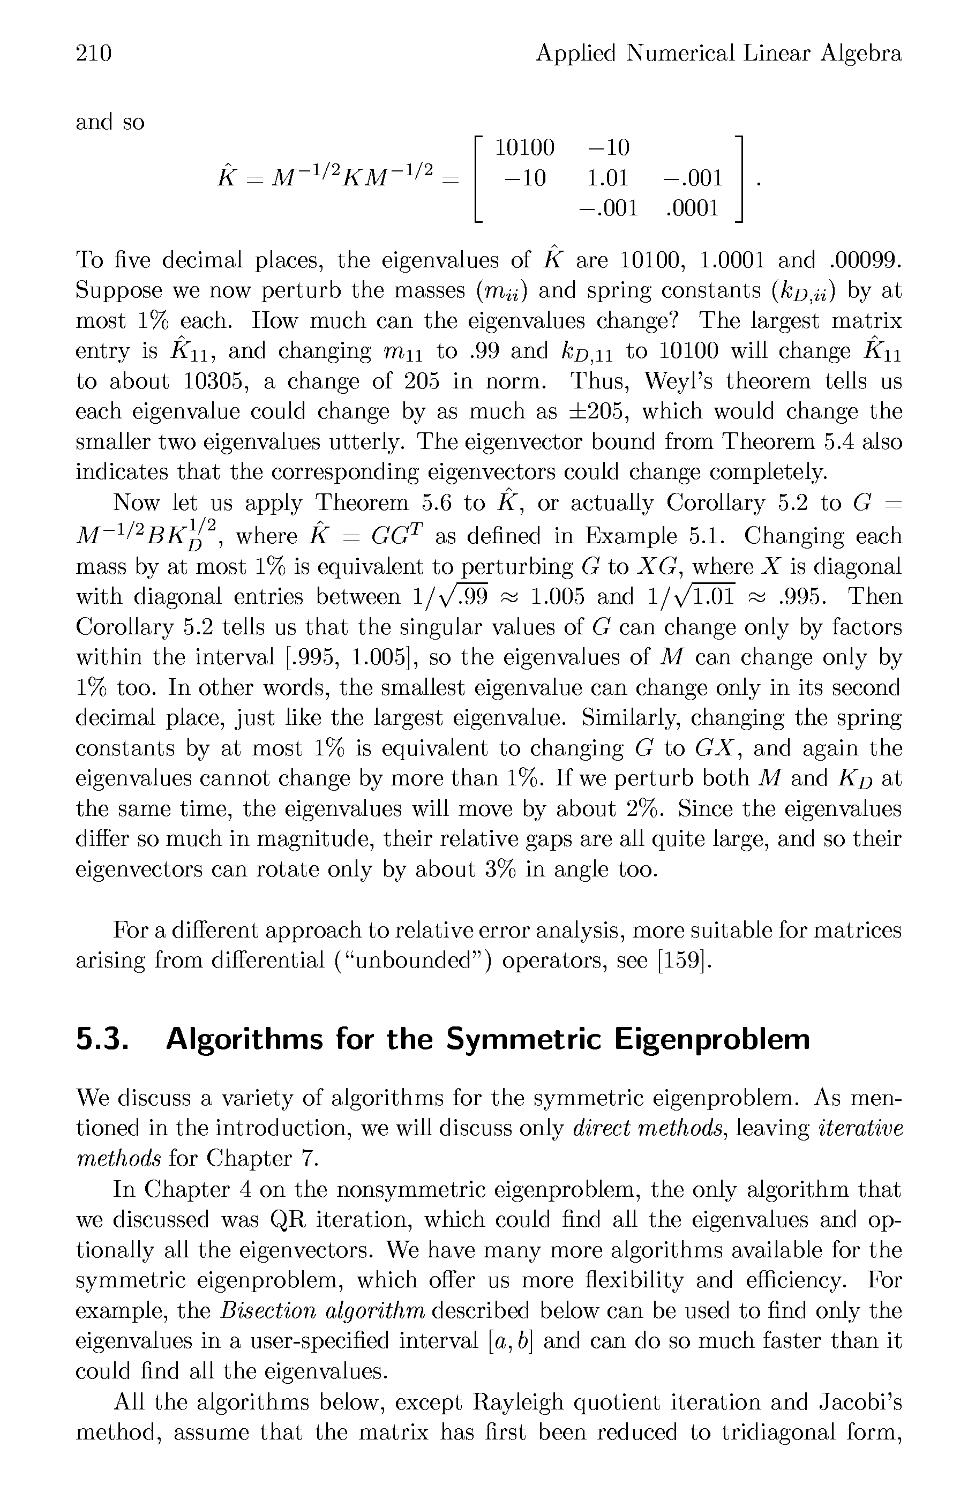 5.3 Algorithms for the Symmetric Eigenproblem